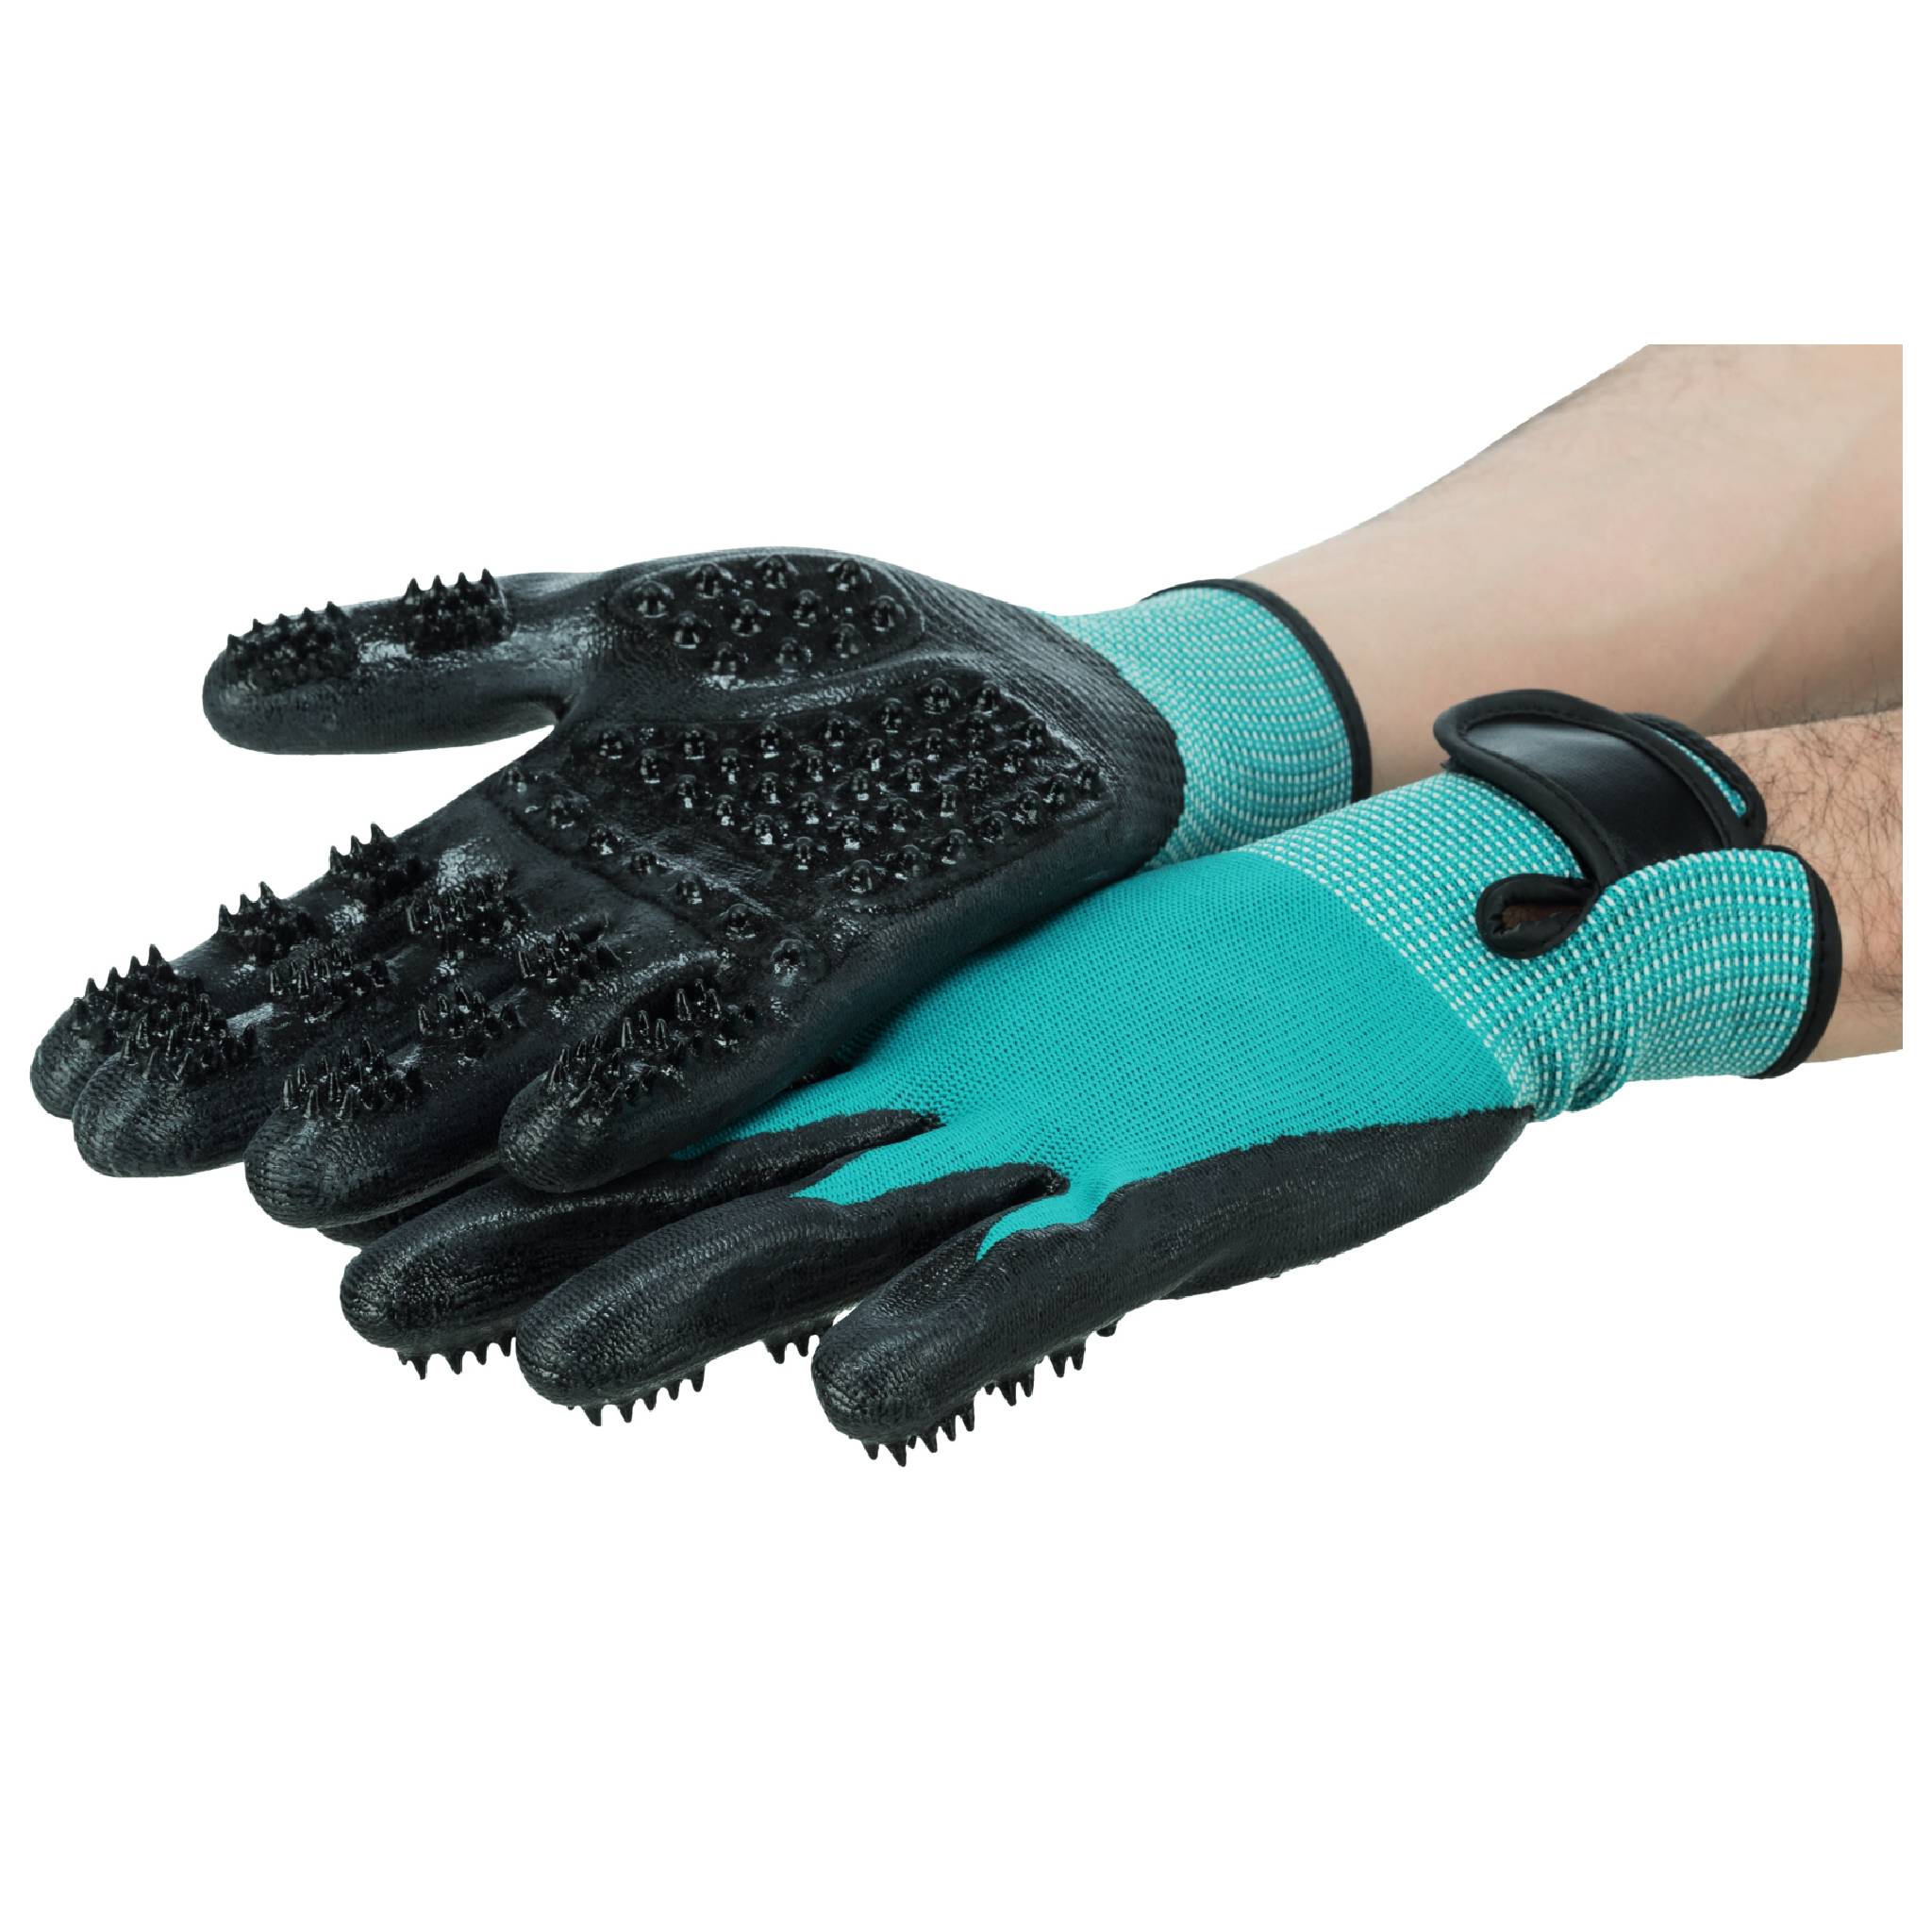 Trixie Fur Care Gloves, 1 Pair